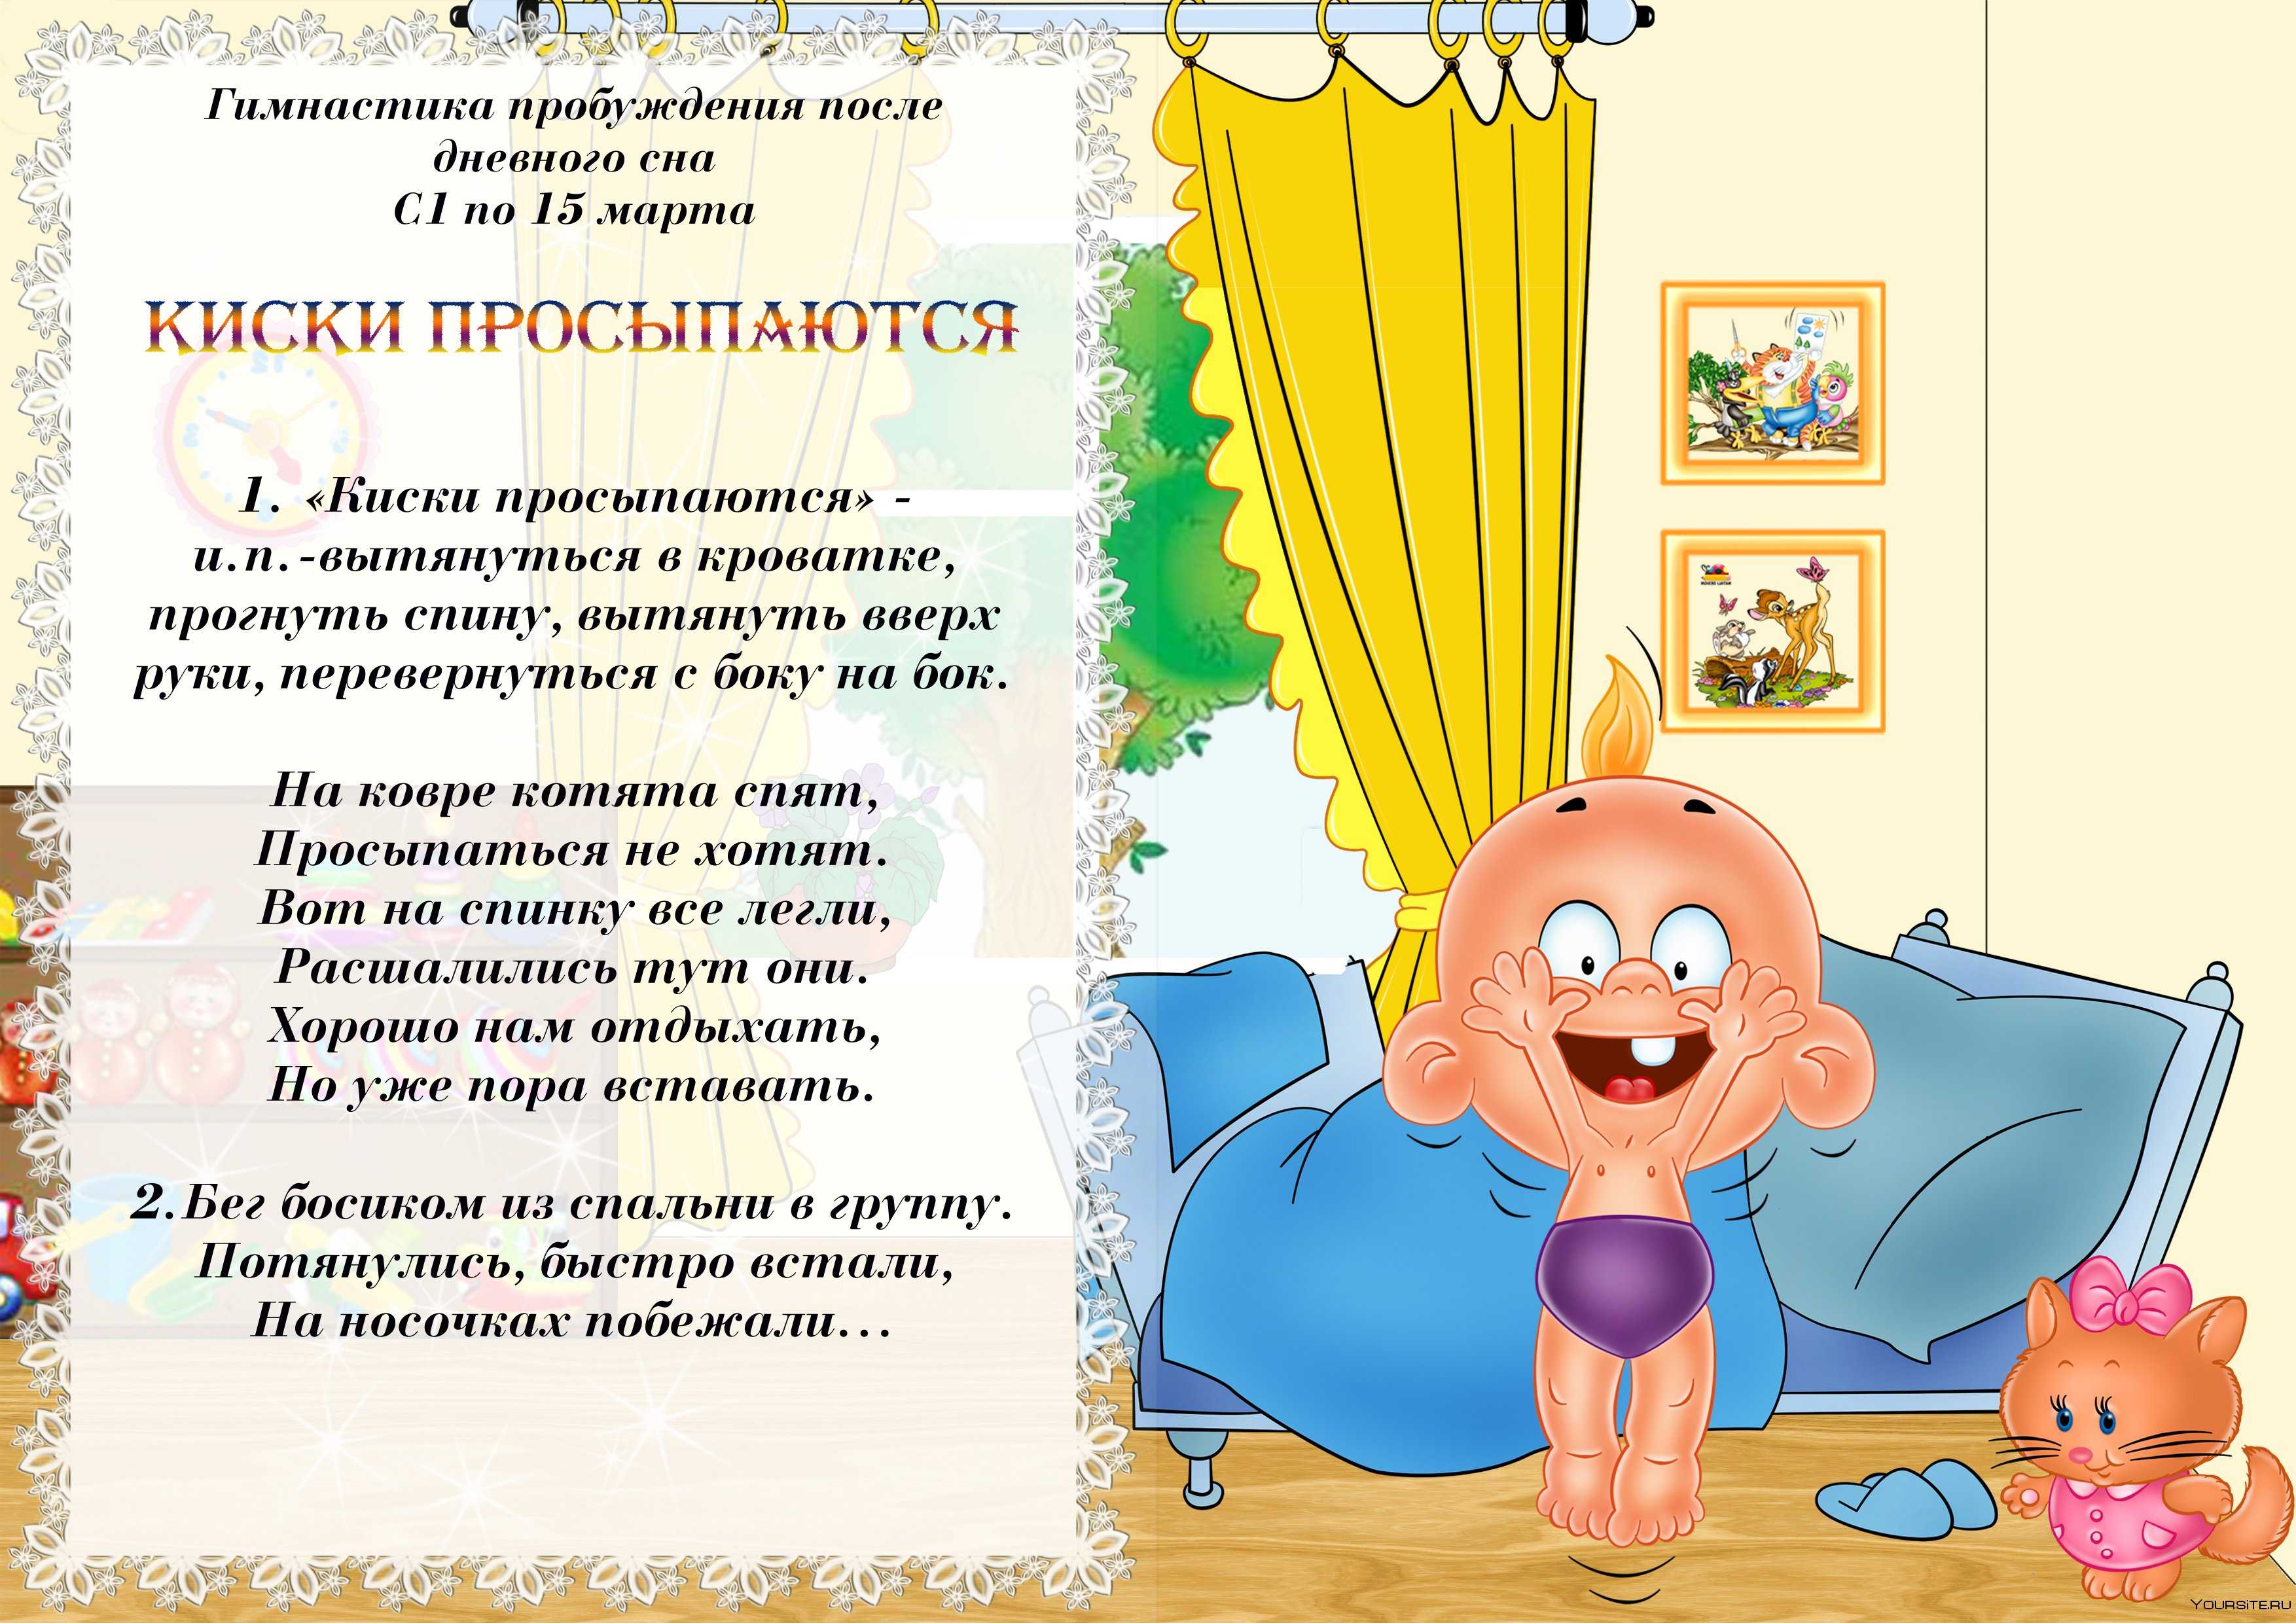 Гимнастика после сна в старшей группе детского сада, картотека по фгос | rucheyok.ru